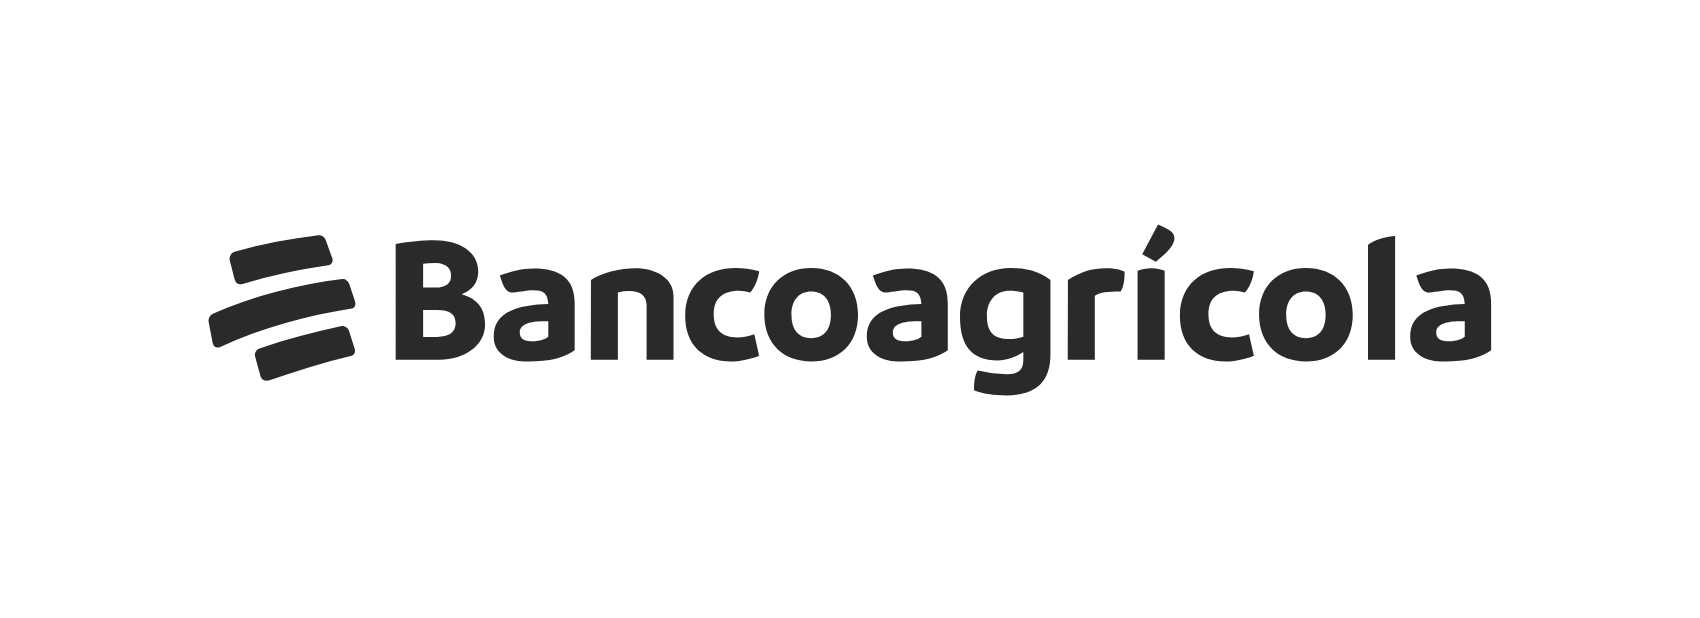 BancoAgricola- logo